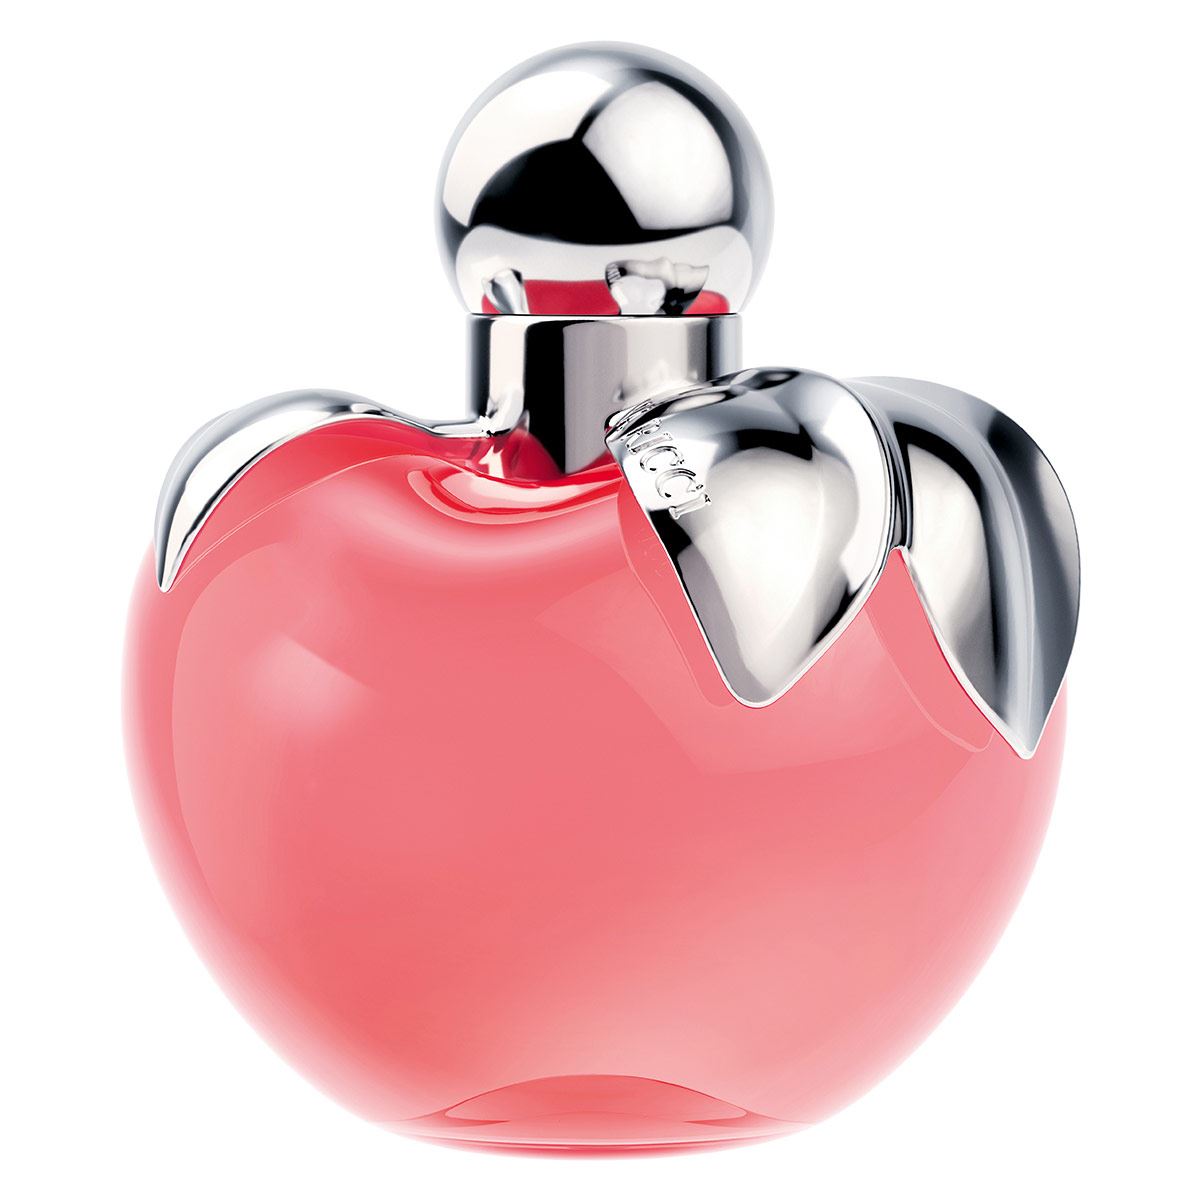 Juego de perfume de mujer de Nina Ricci, Sin color